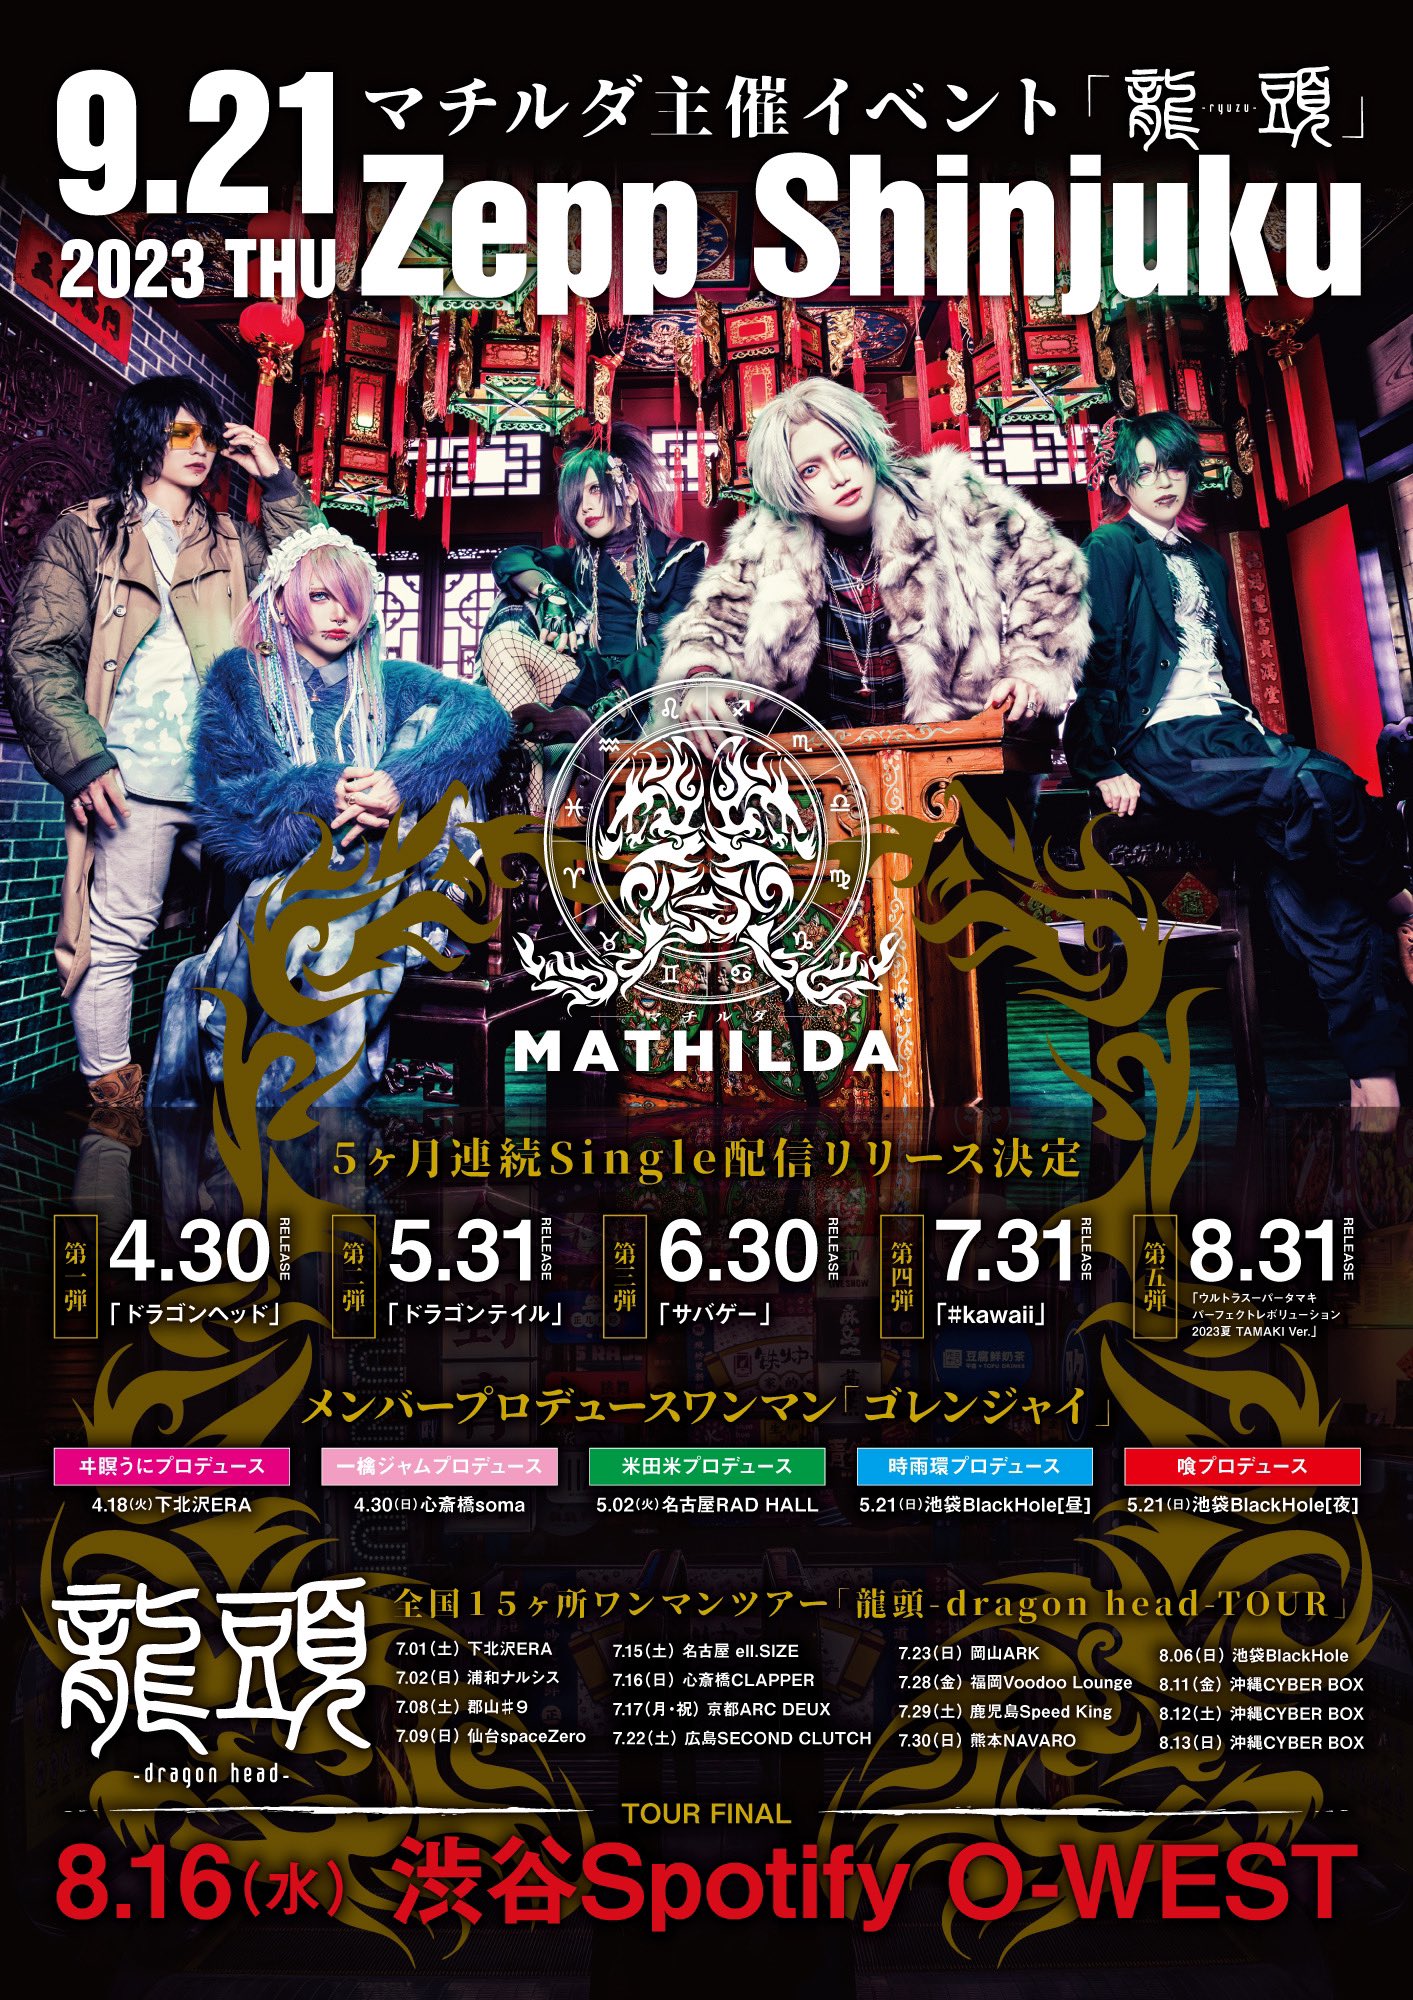 マチルダ全国15ヶ所ワンマンツアー『龍頭-dragon head- TOUR』